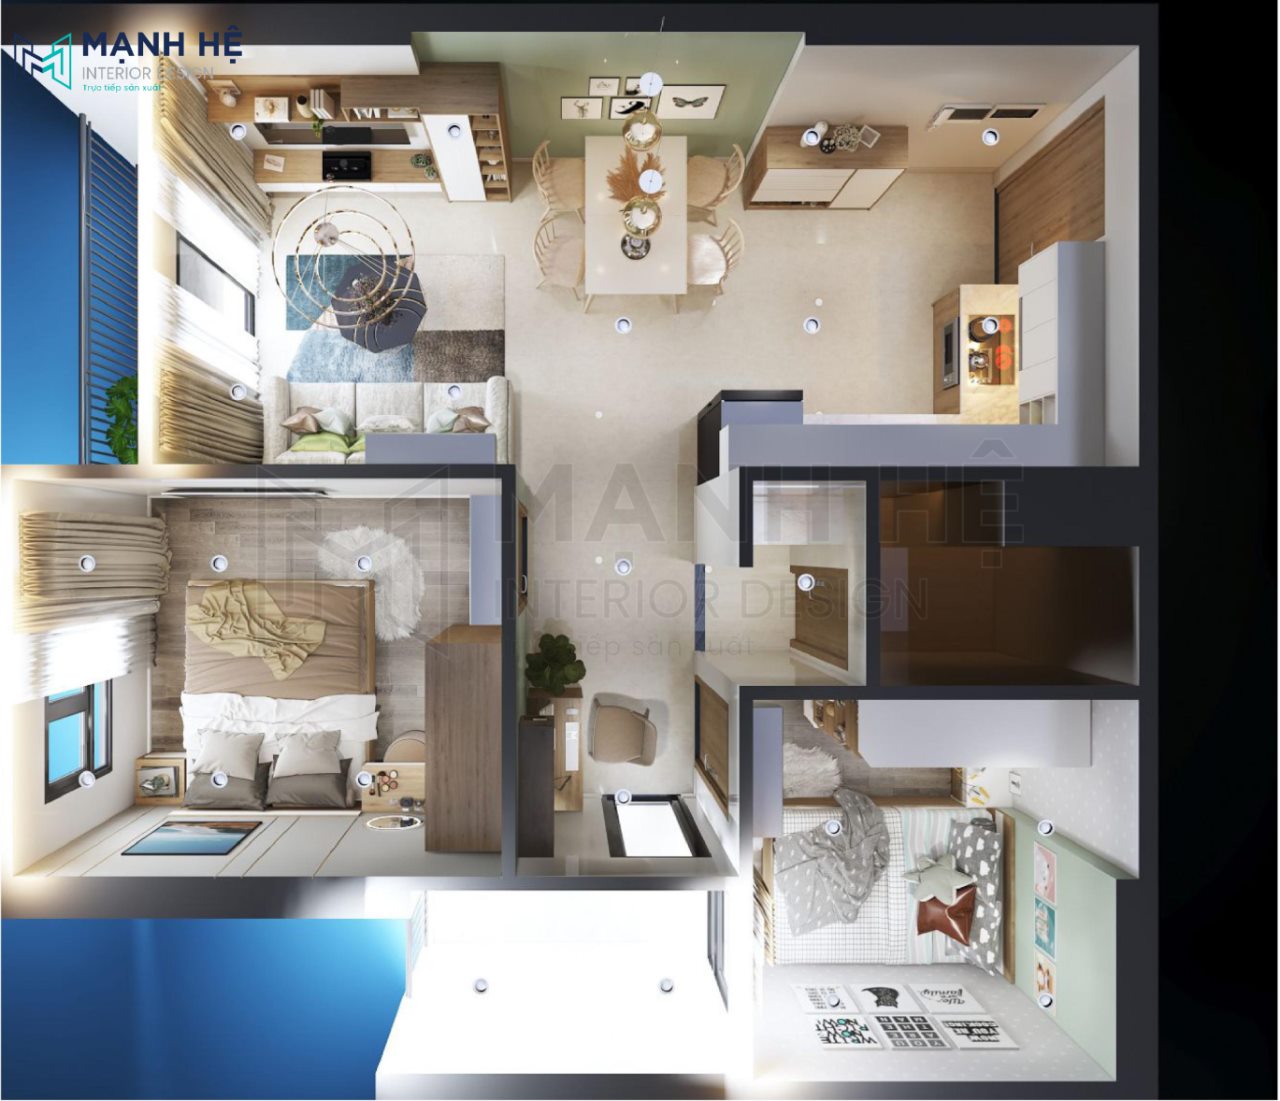 Một mô hình căn hộ hoàn hảo không chỉ giúp cho người xem dễ dàng hình dung được diện tích của căn hộ mà còn thấy được sự hài hòa, tối ưu hóa không gian nội thất. Nhấn vào hình ảnh để khám phá mô hình căn hộ tốt nhất cho bạn.